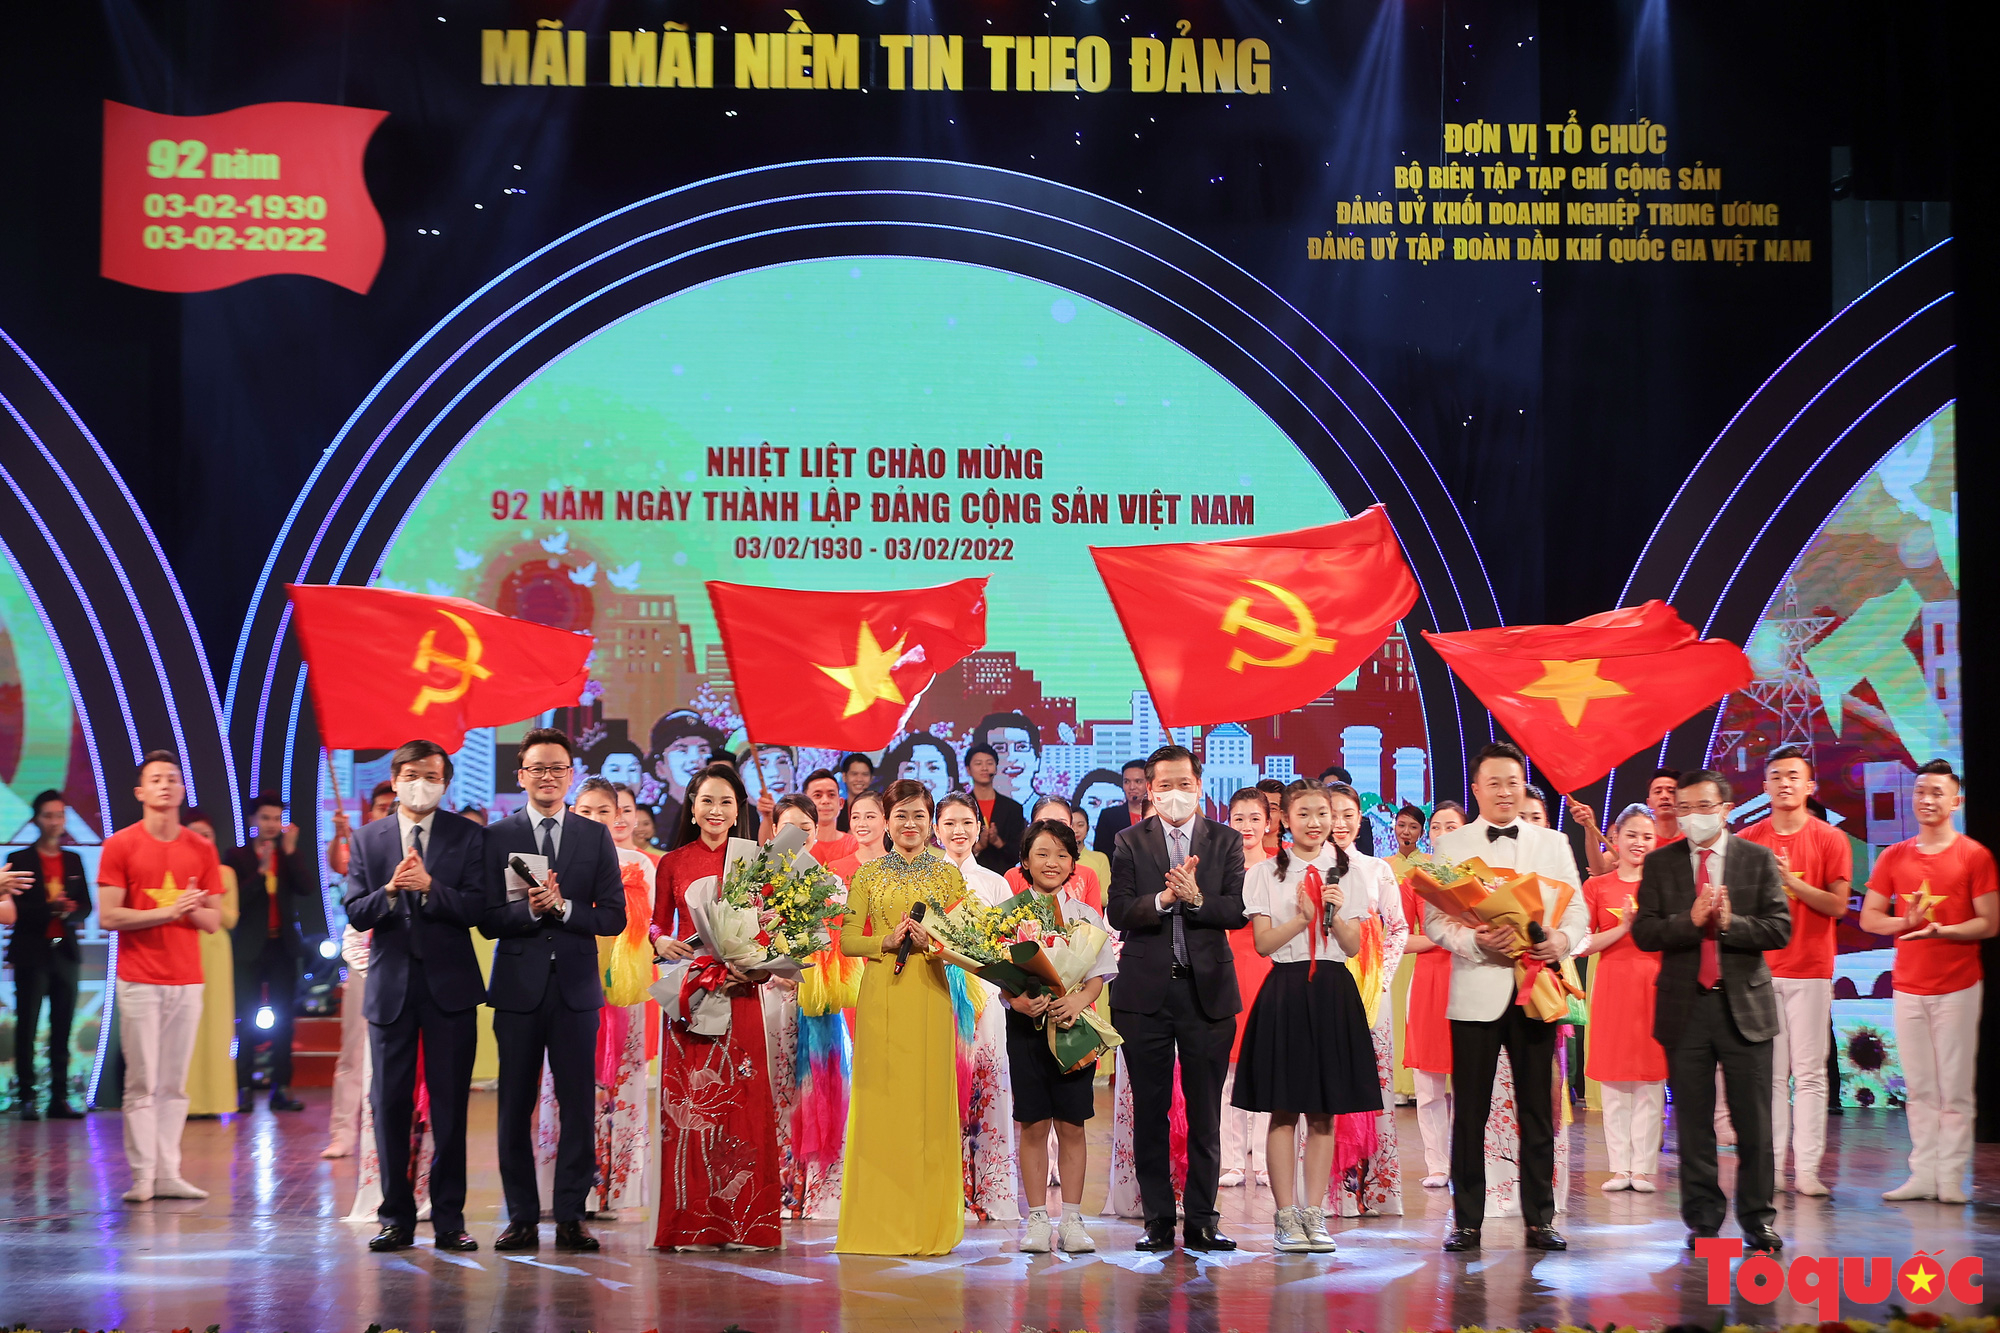 Toàn cảnh chương trình nghệ thuật &quot;Mãi mãi niềm tin theo Đảng&quot; chào mừng 92 năm ngày thành lập Đảng Cộng sản Việt Nam - Ảnh 12.